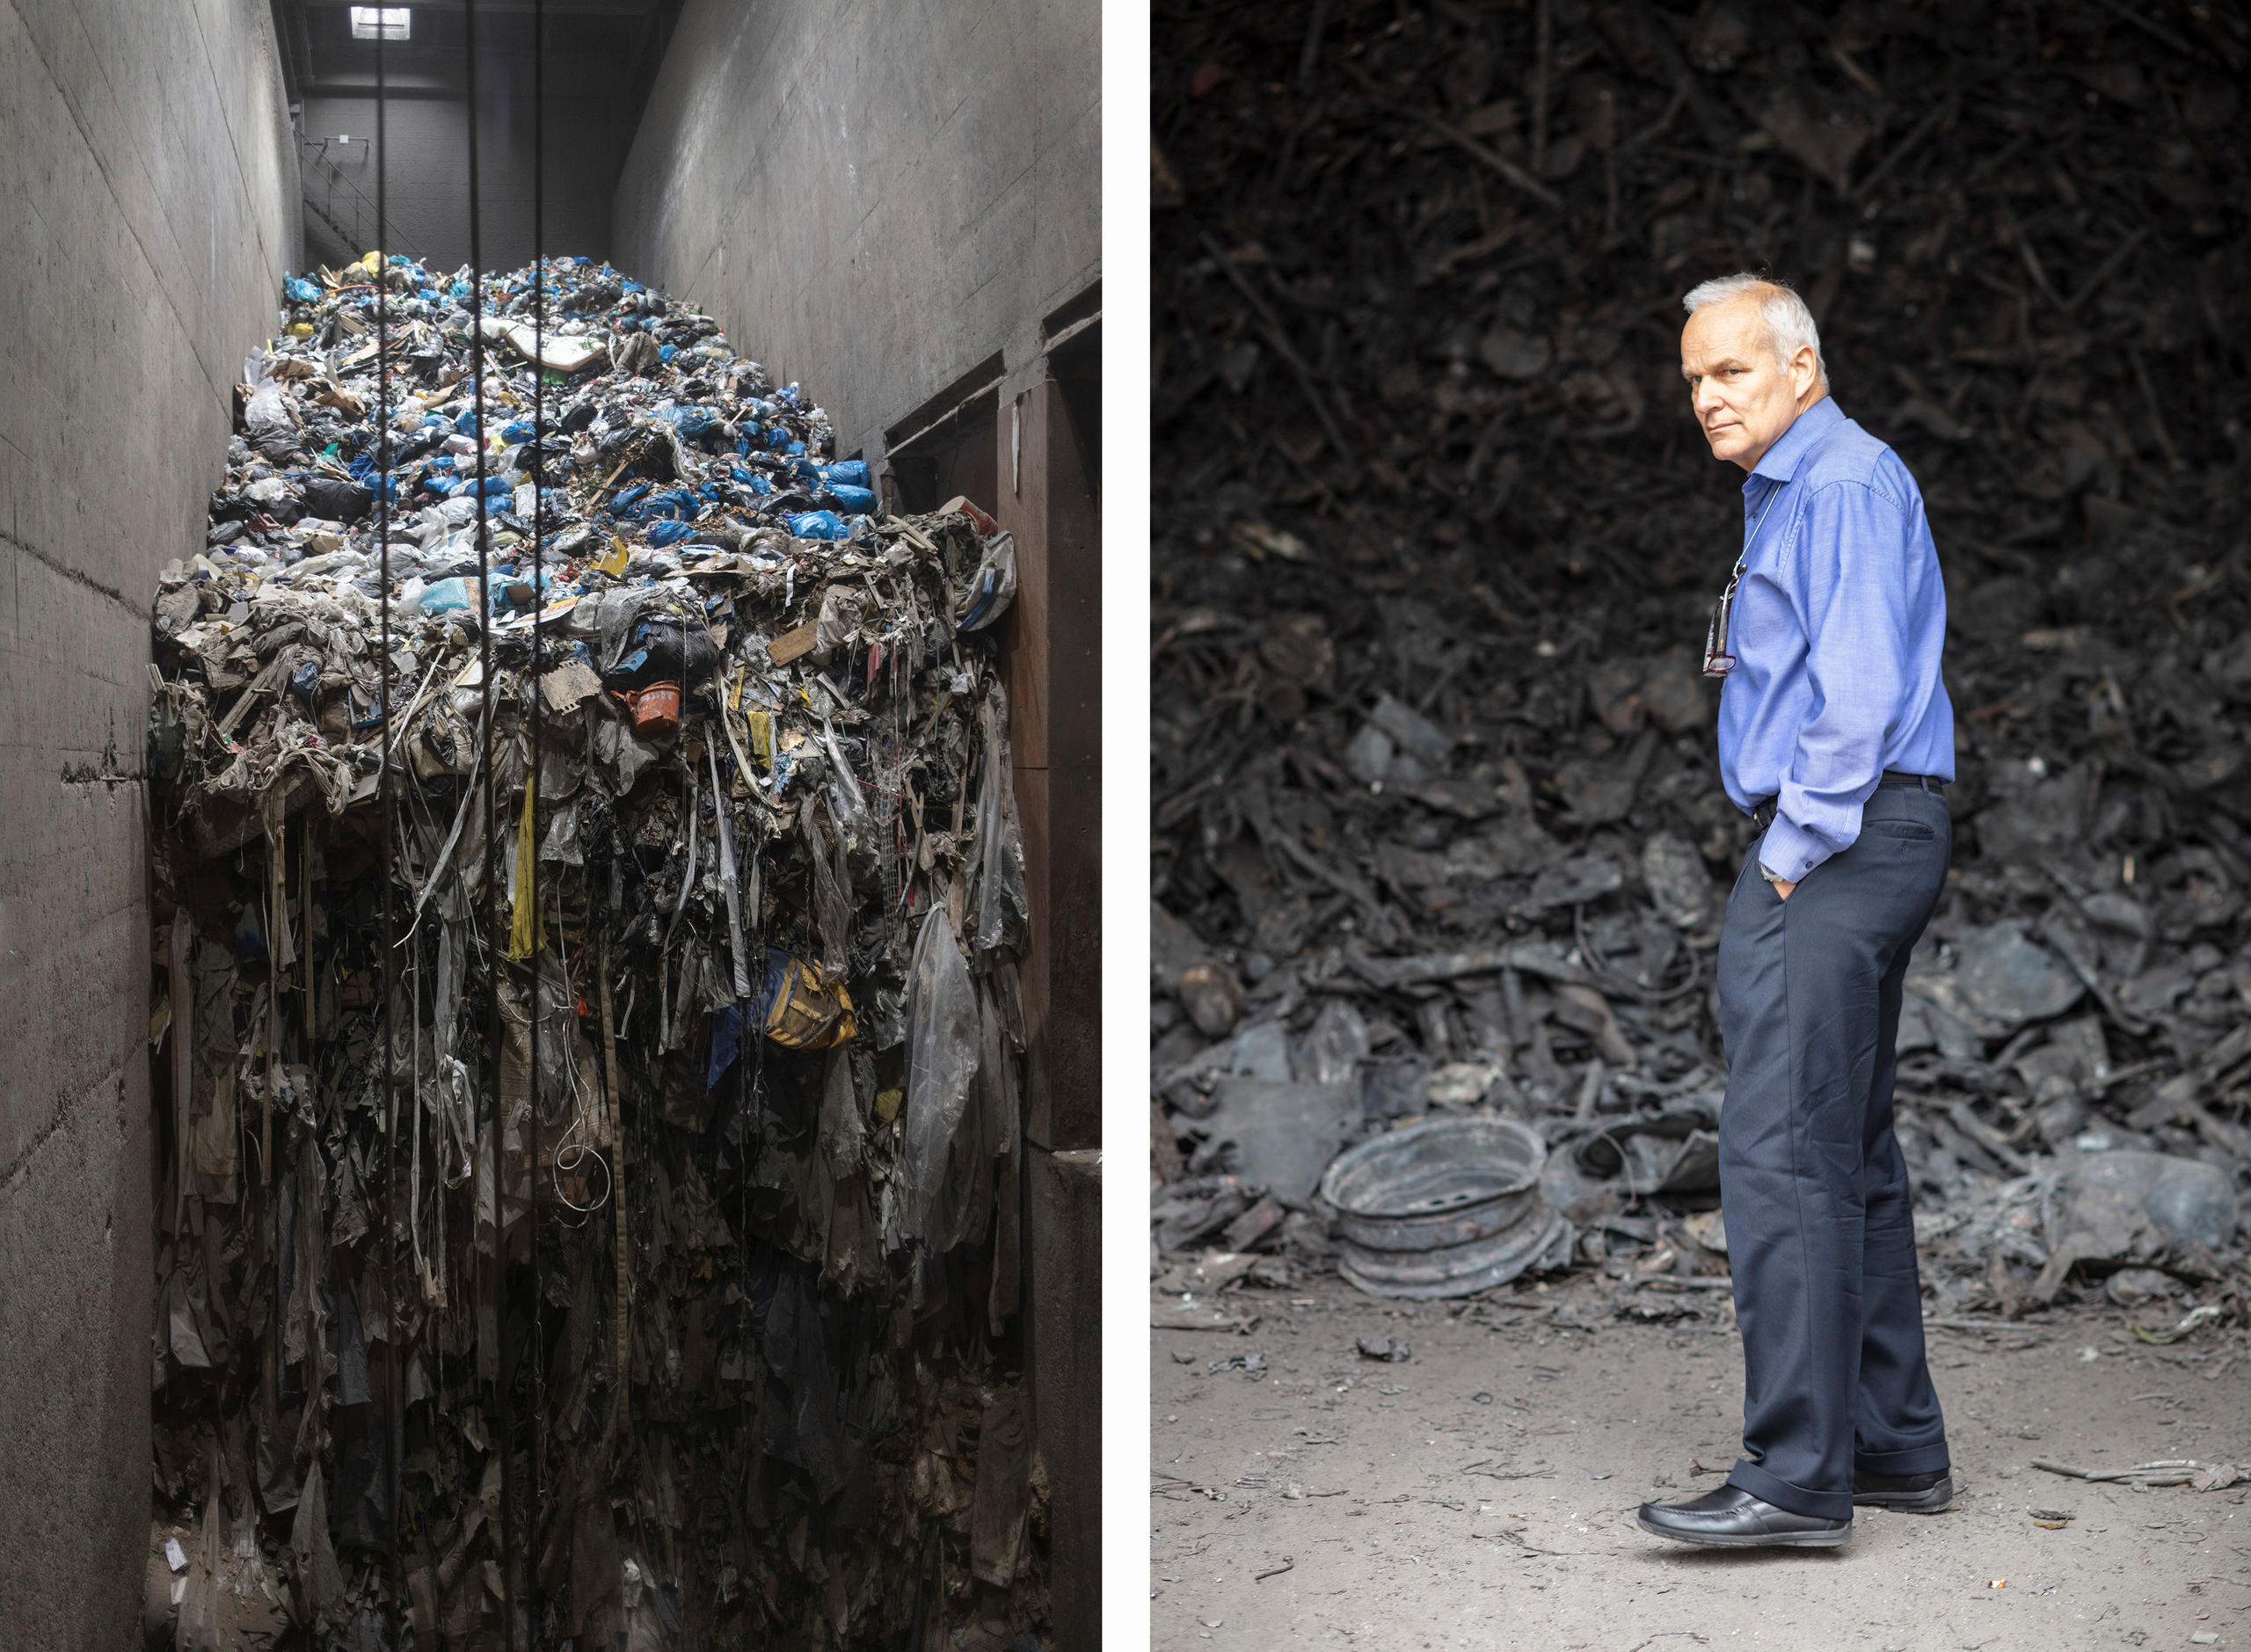 على اليسار: جبل من القمامة والنفايات وعلى اليمين: رجل يقف أمام كوم من المواد الحديدة المحروقة